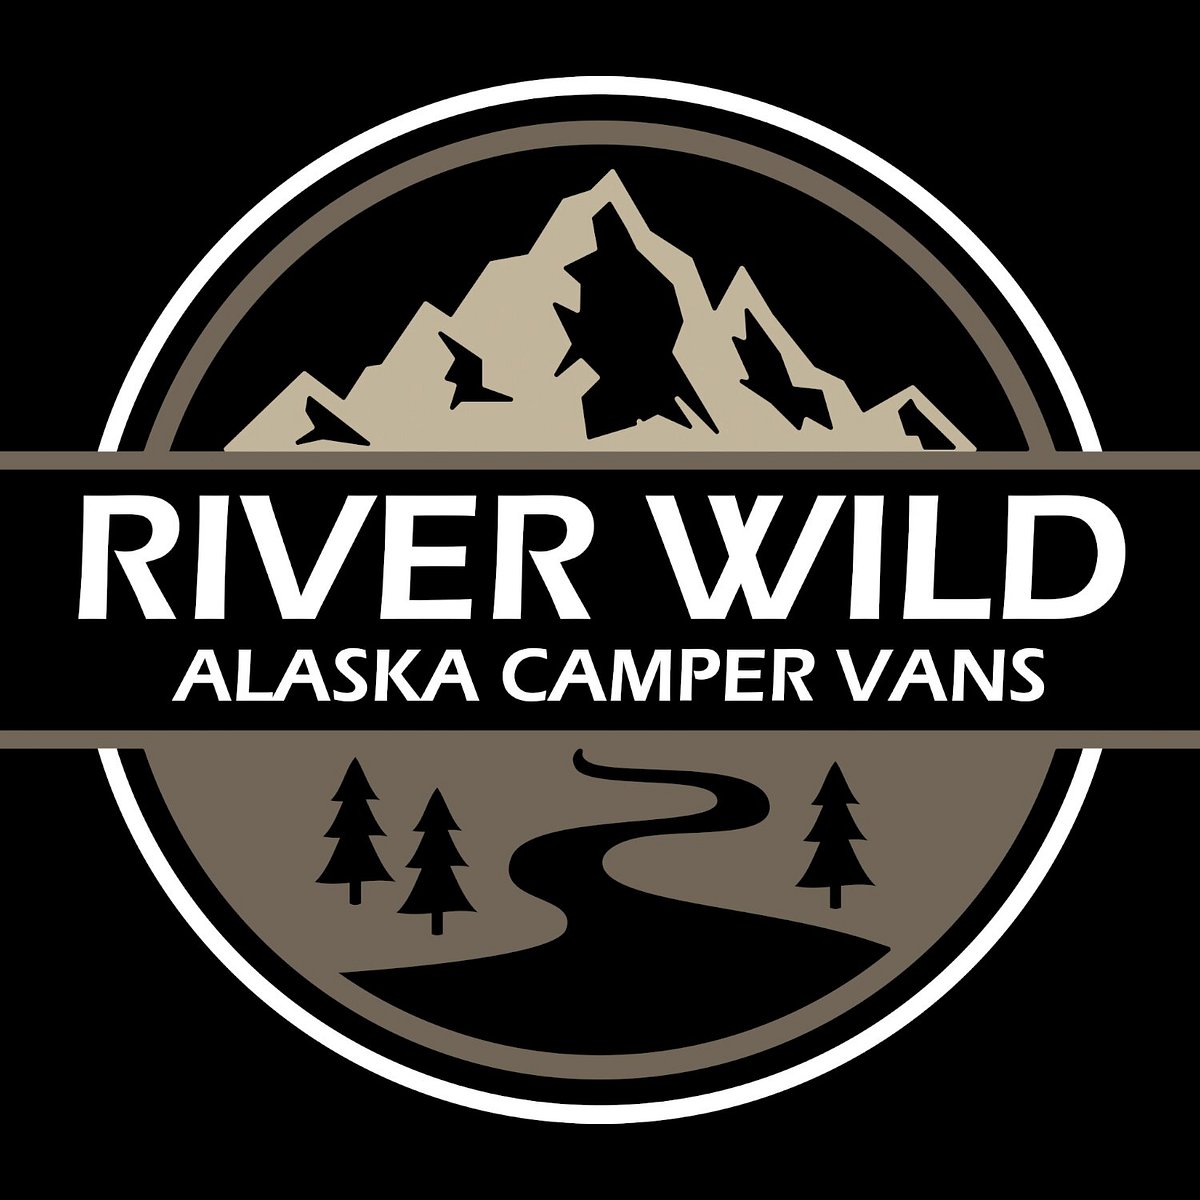 RIVER WILD CAMPER VANS (Anchorage) Ce qu'il faut savoir